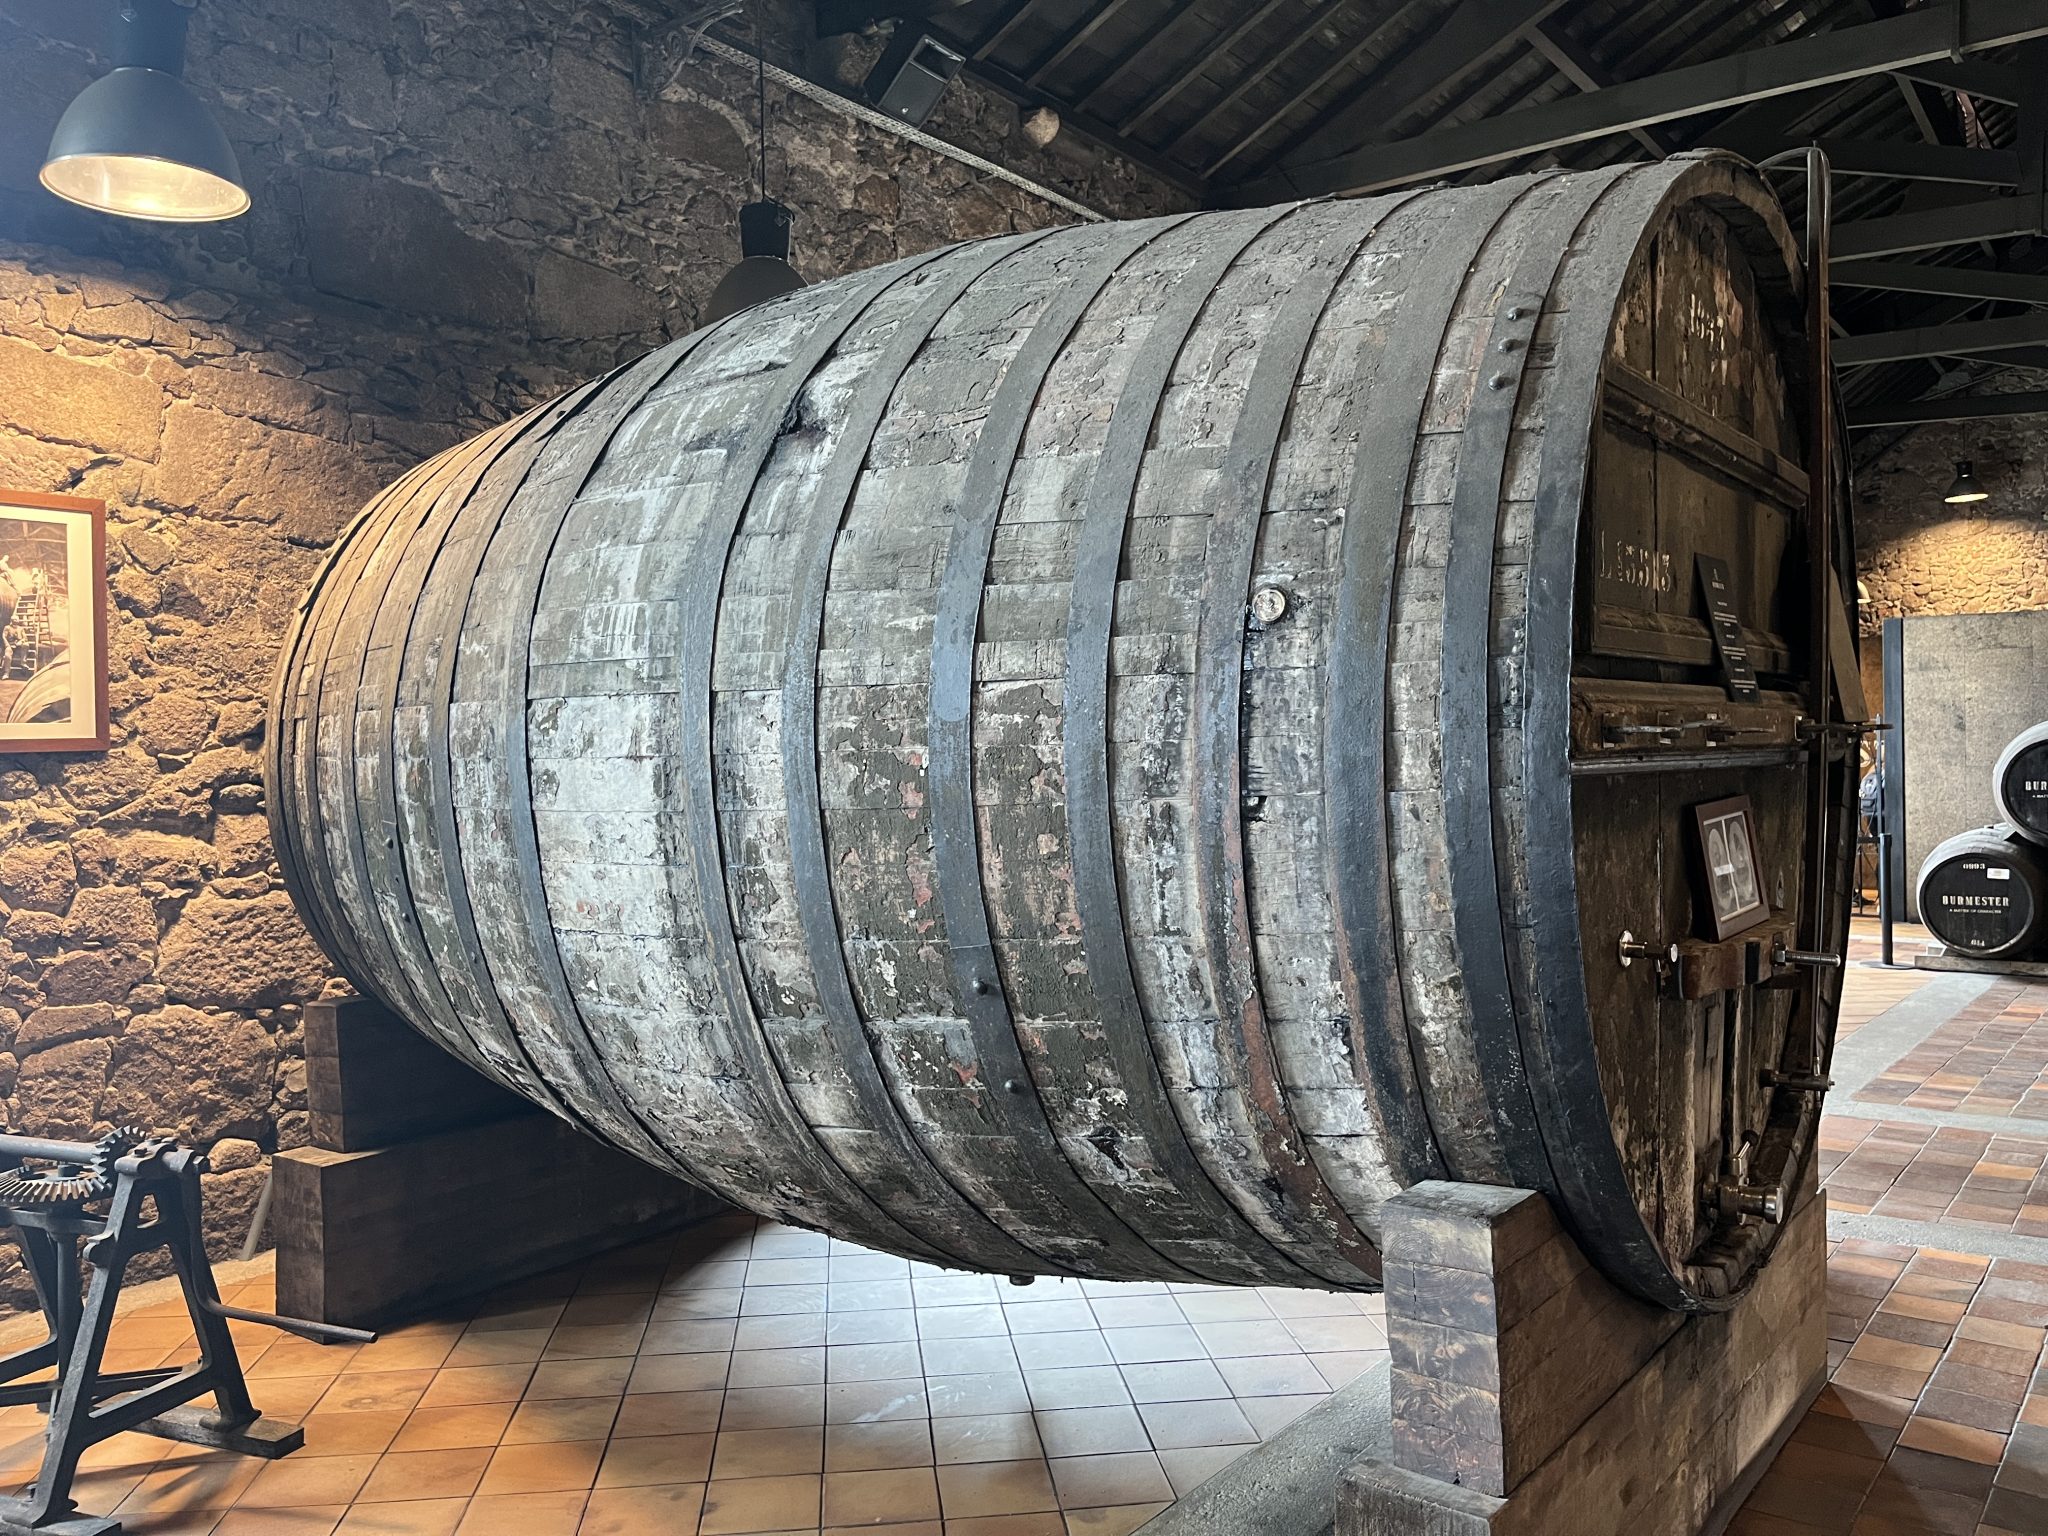 Barrel for aging port wine, Porto, Portugal